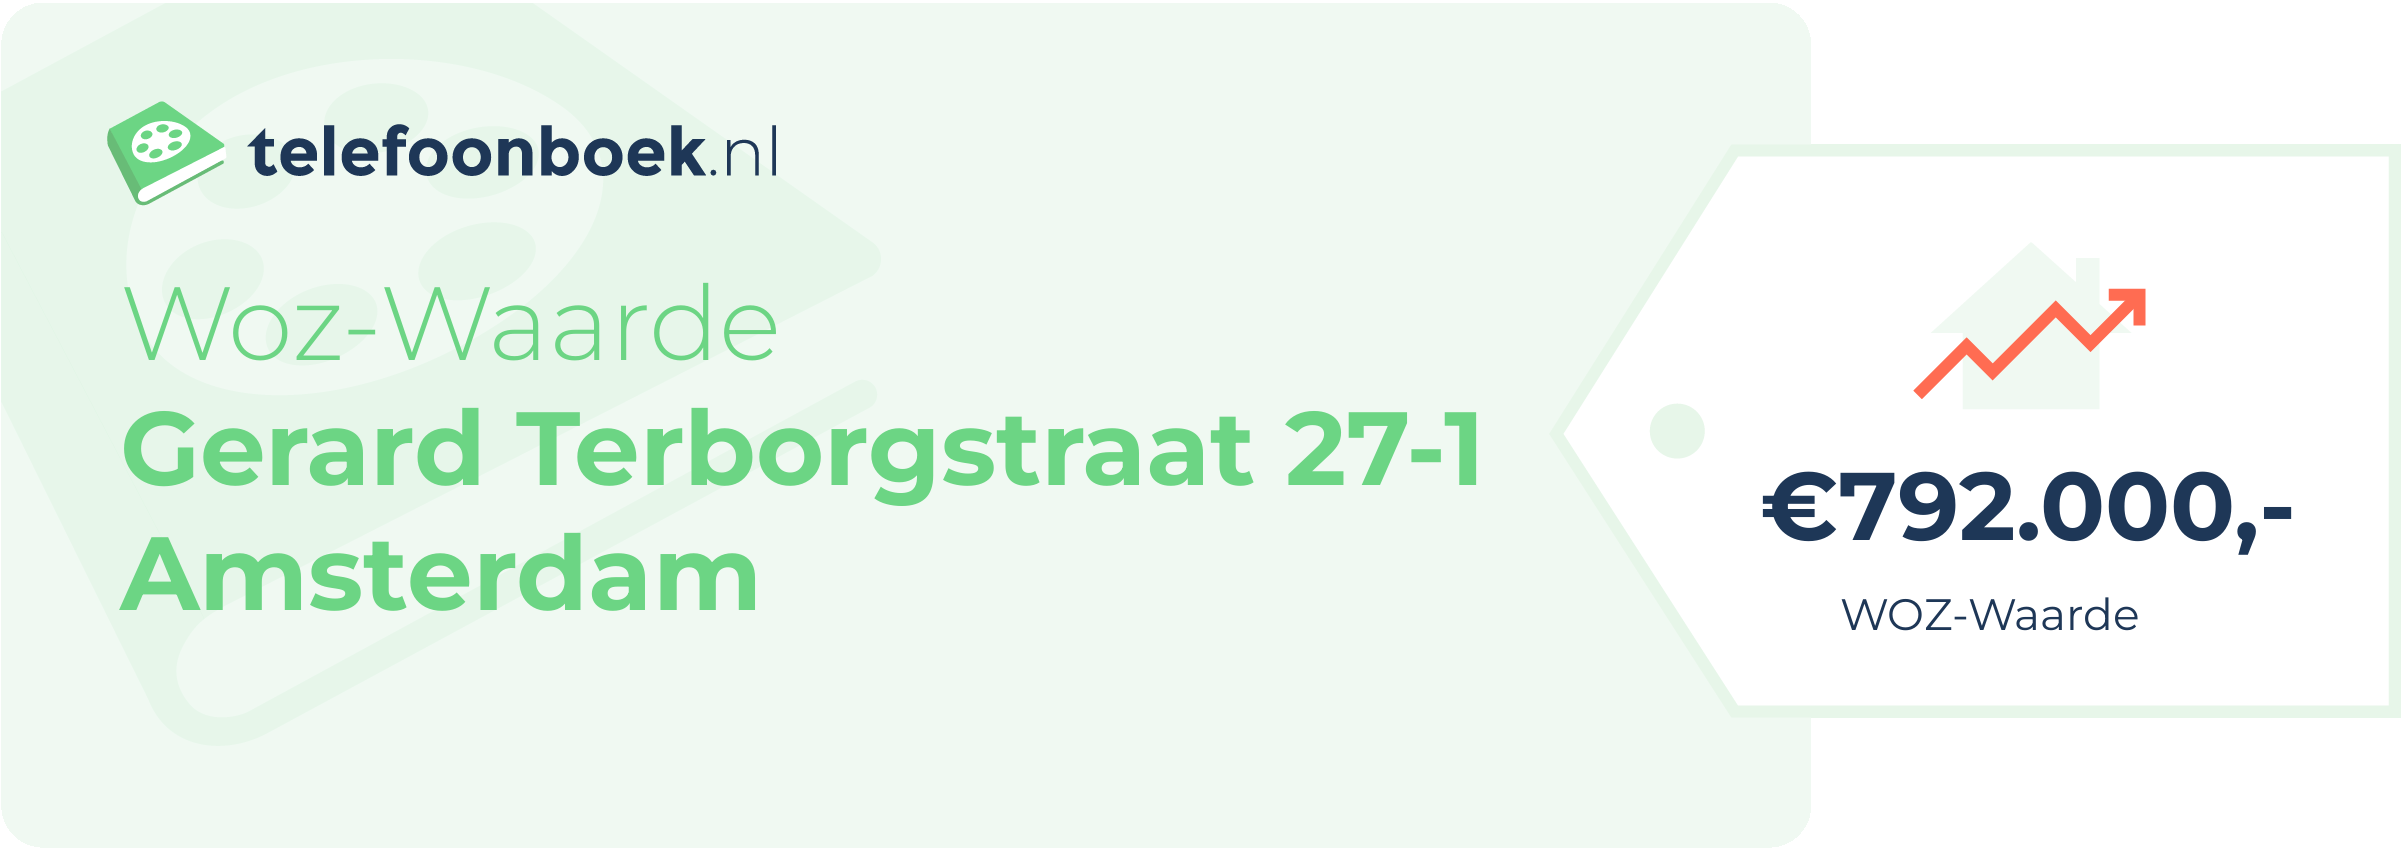 WOZ-waarde Gerard Terborgstraat 27-1 Amsterdam